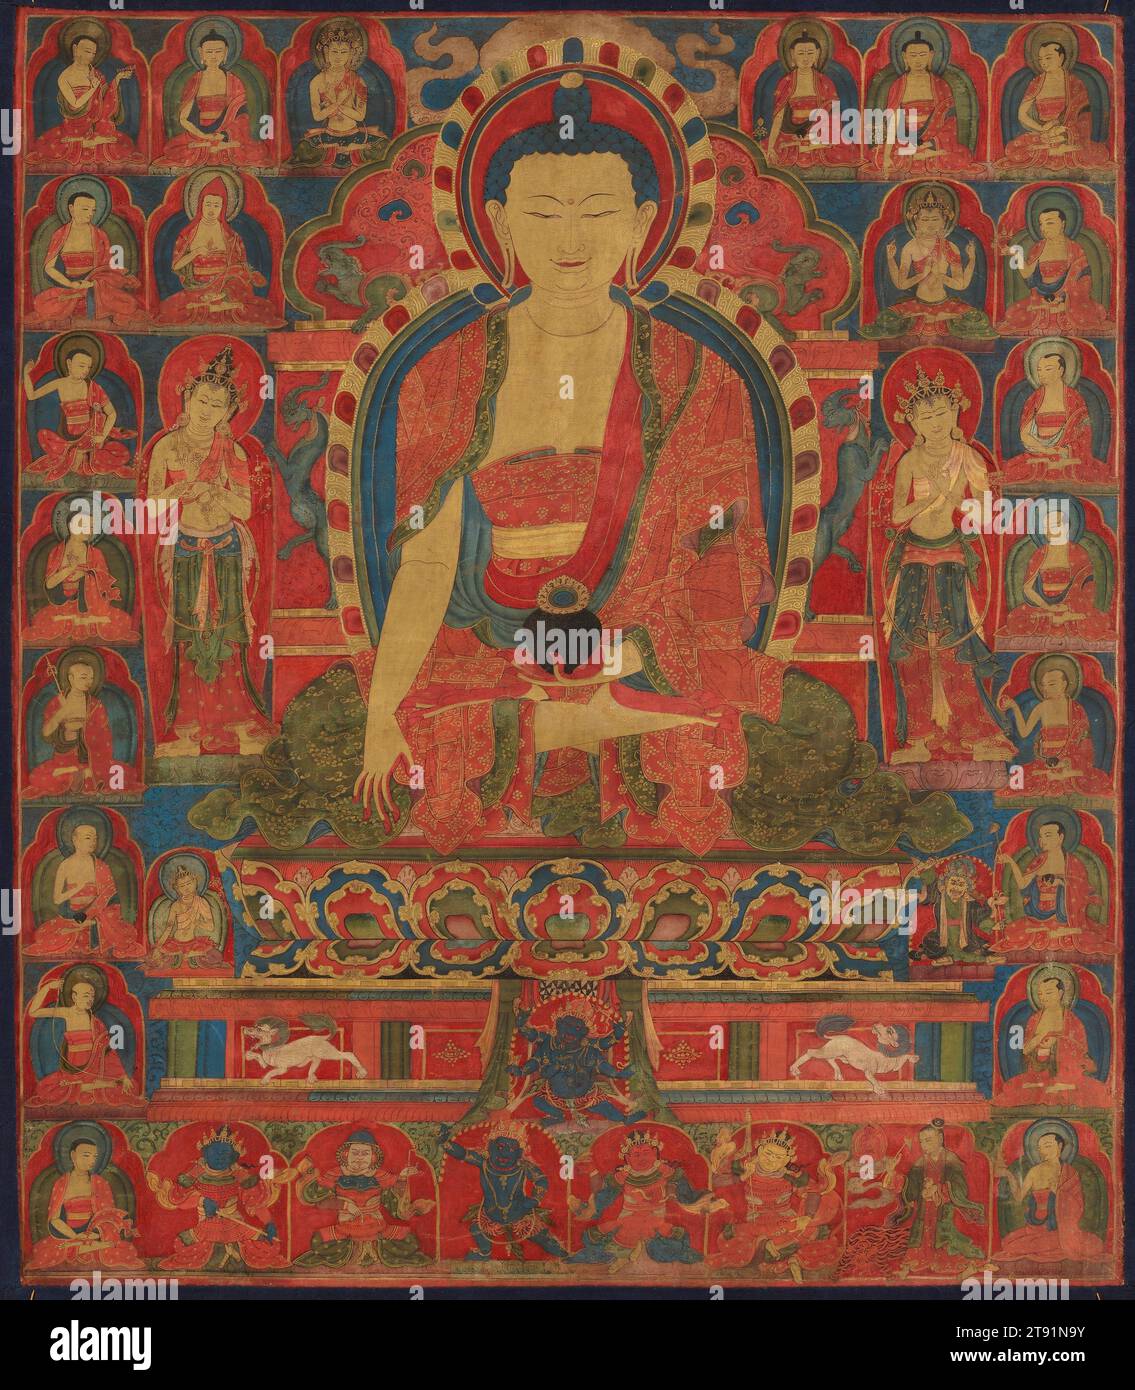 Shakyamuni Buddha, 1440-1470, 29 x 3/16 Zoll (73,66 x 63,98 cm) (Bild), undurchsichtiges Aquarell und Gold auf Baumwolle, Tibet, 15. Jahrhundert, der goldene, leuchtende Körper des Buddha wird zum Zeitpunkt seiner Erleuchtung in diesem atemberaubenden Thangka (Gemälde) dargestellt. Er trägt ein Flickenteppich-monastisches Gewand und trägt eine Bettelschale, die er beide adoptierte, nachdem er Askese über sein ehemaliges fürstliches Leben gewählt hatte. Seine rechte Hand streckt nach der Erde, und ein erhabener goldener Halo umgibt seinen Kopf und seinen Körper. Zwei Bodhisattvas stehen auf beiden Seiten seines Lotusblütenthrons Stockfoto